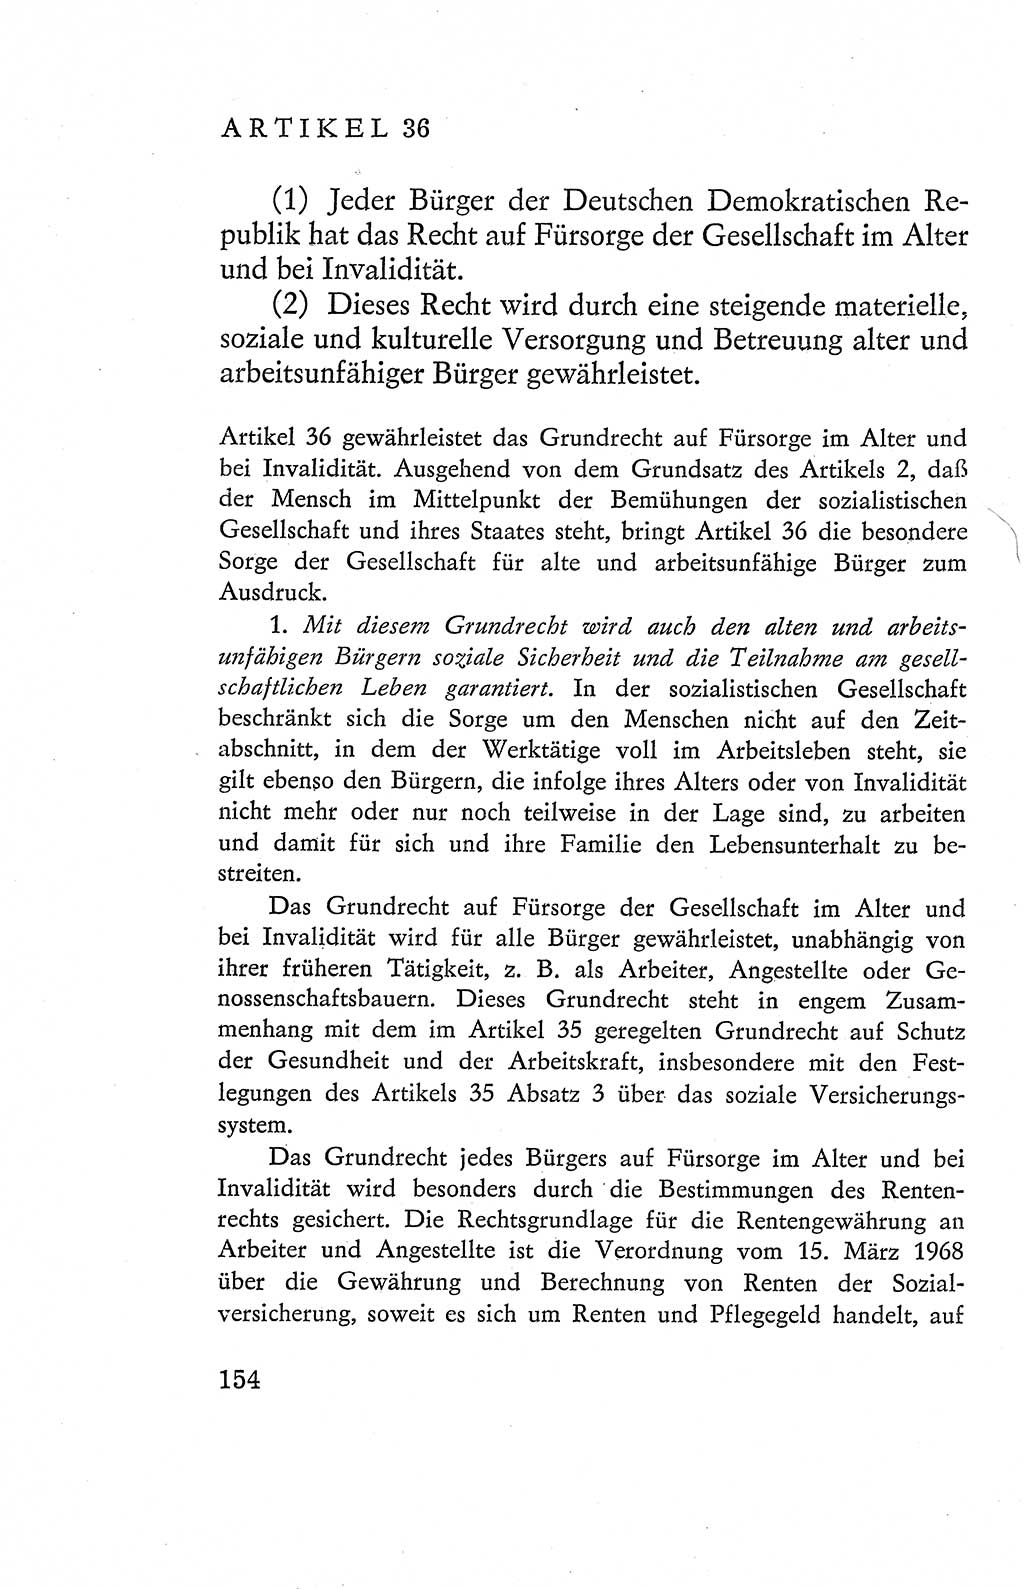 Verfassung der Deutschen Demokratischen Republik (DDR), Dokumente, Kommentar 1969, Band 2, Seite 154 (Verf. DDR Dok. Komm. 1969, Bd. 2, S. 154)